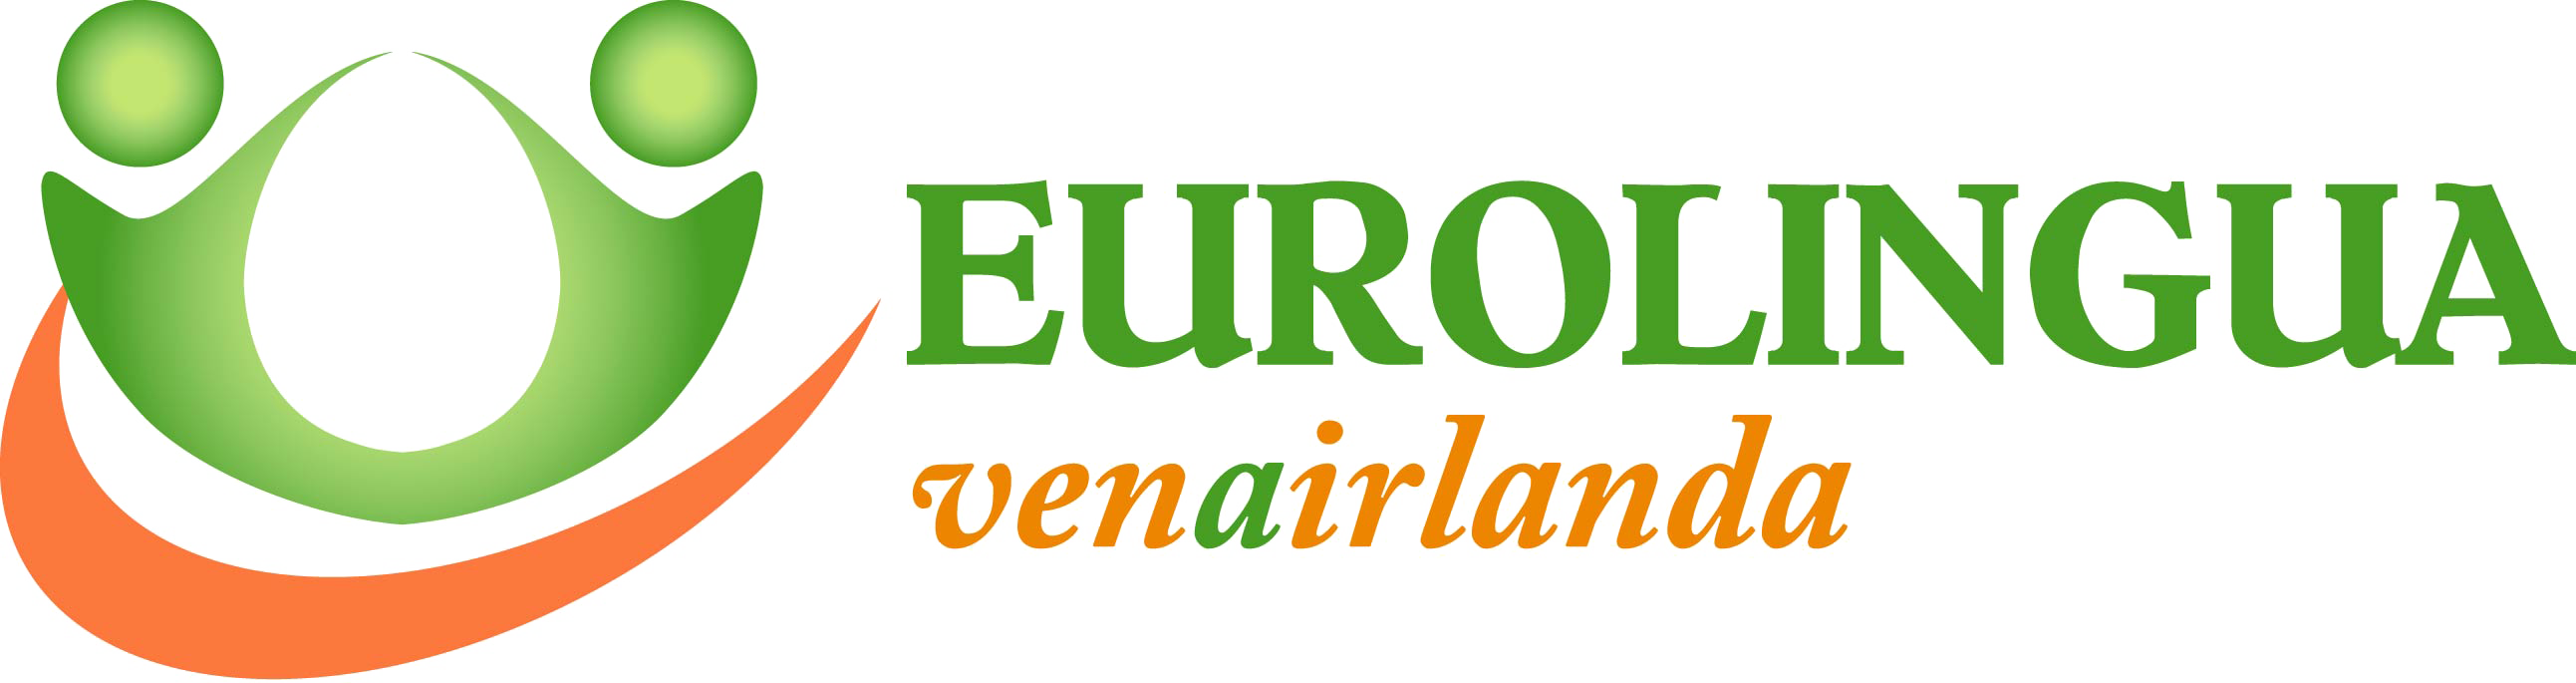 Eurolingua Venairlanda